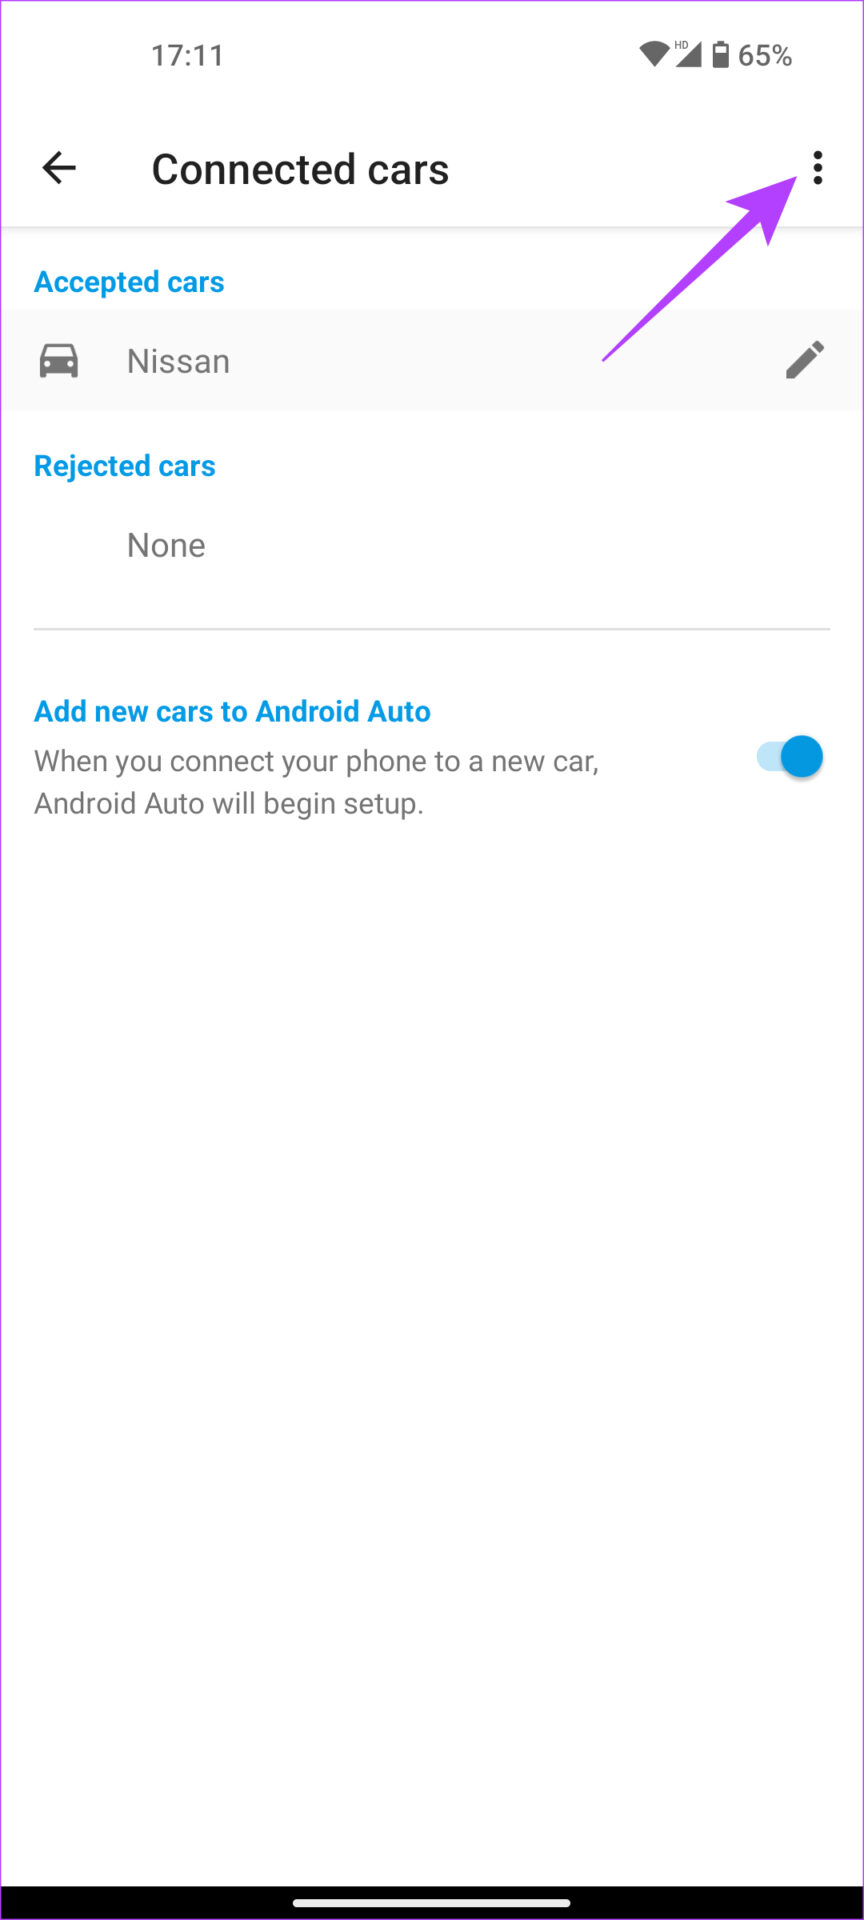 منوی سه نقطه در Android Auto